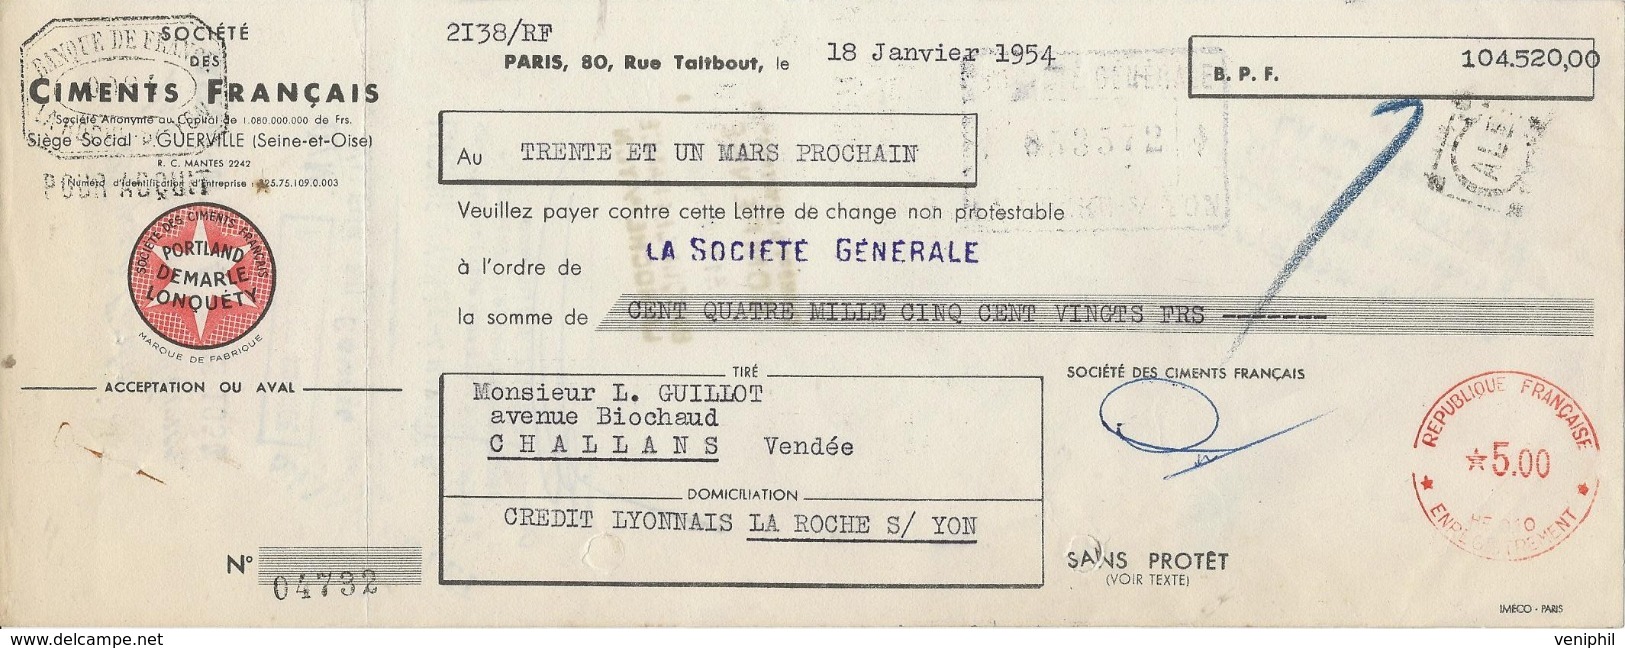 3 LETTRES DE CHANGE - CIMENTS FRANCAIS -BOULOGNE SUR MER -1922-33-54 - Lettres De Change